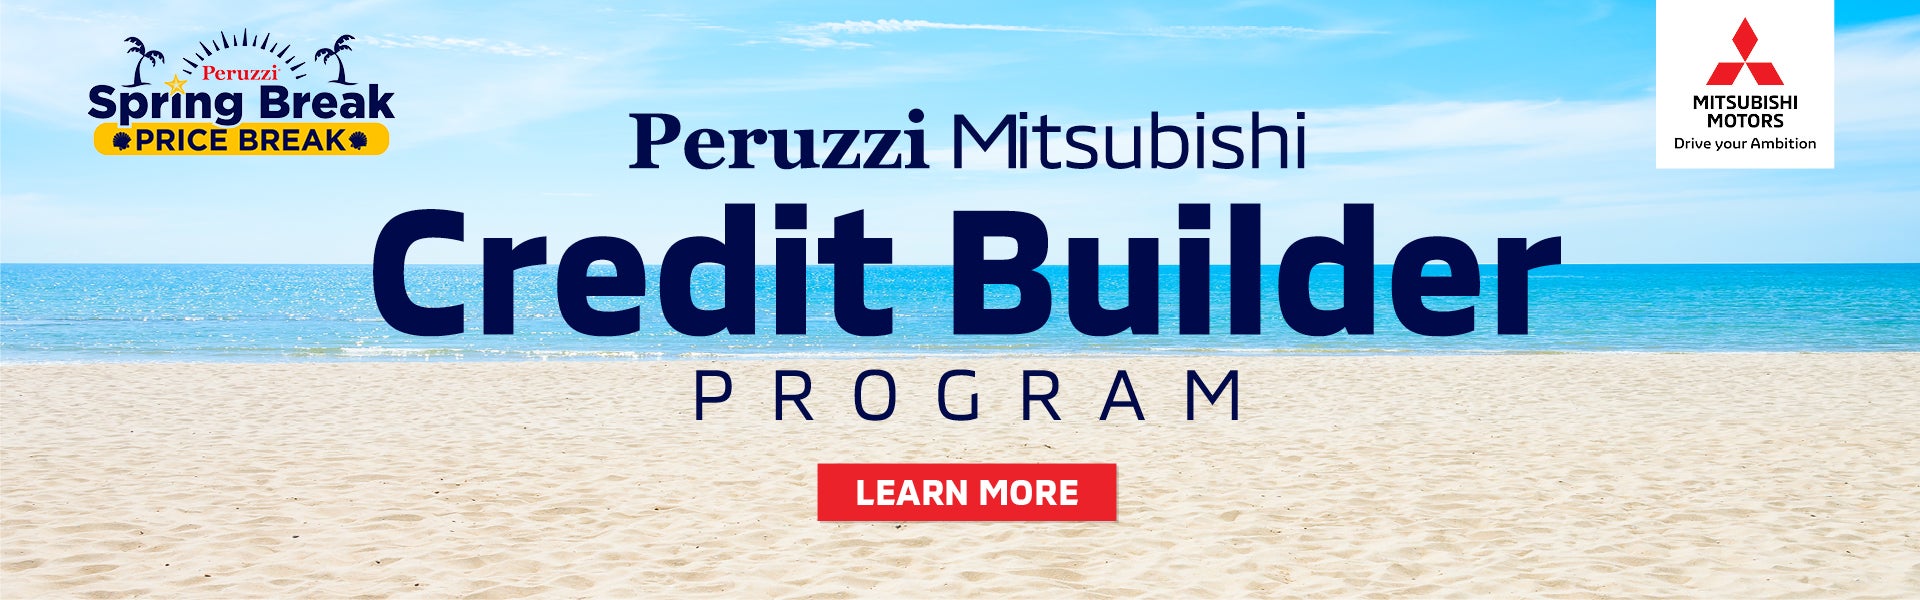 Credit Builder Program for low or no credit